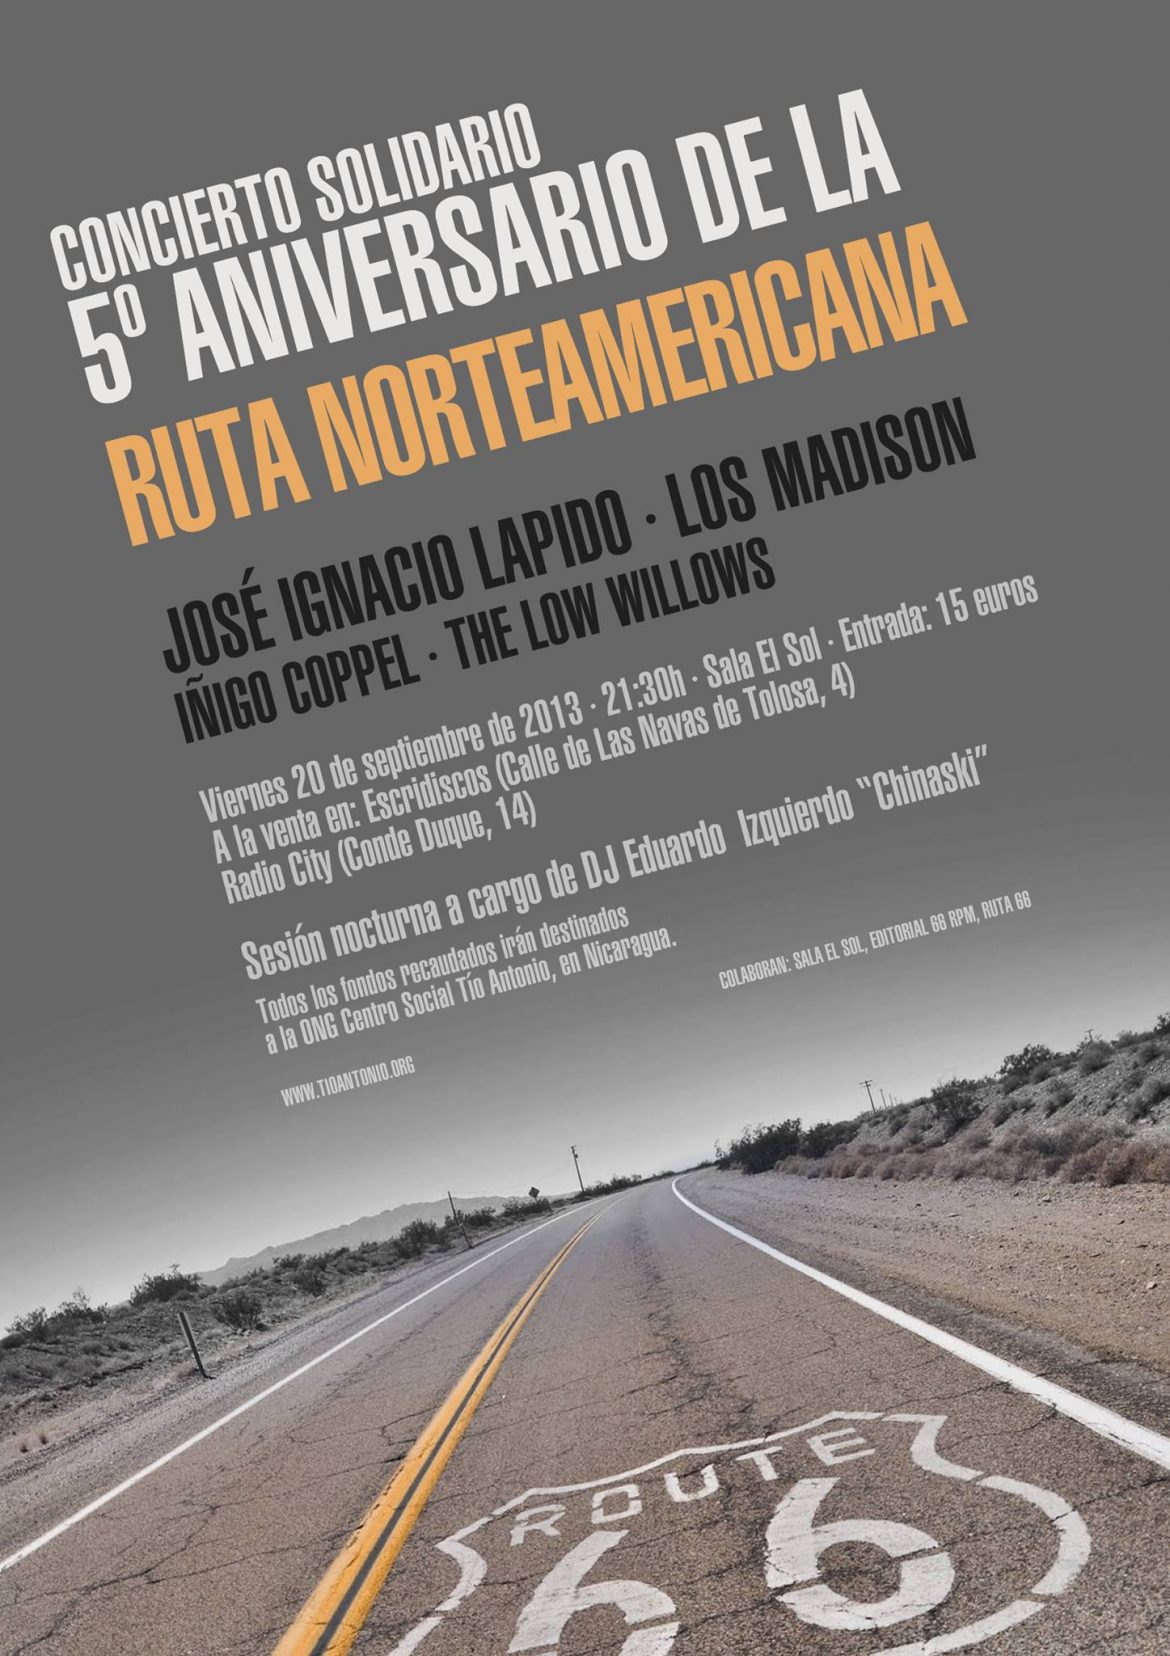 5º Aniversario del blog La Ruta Norteamericana de Fernando Navarro